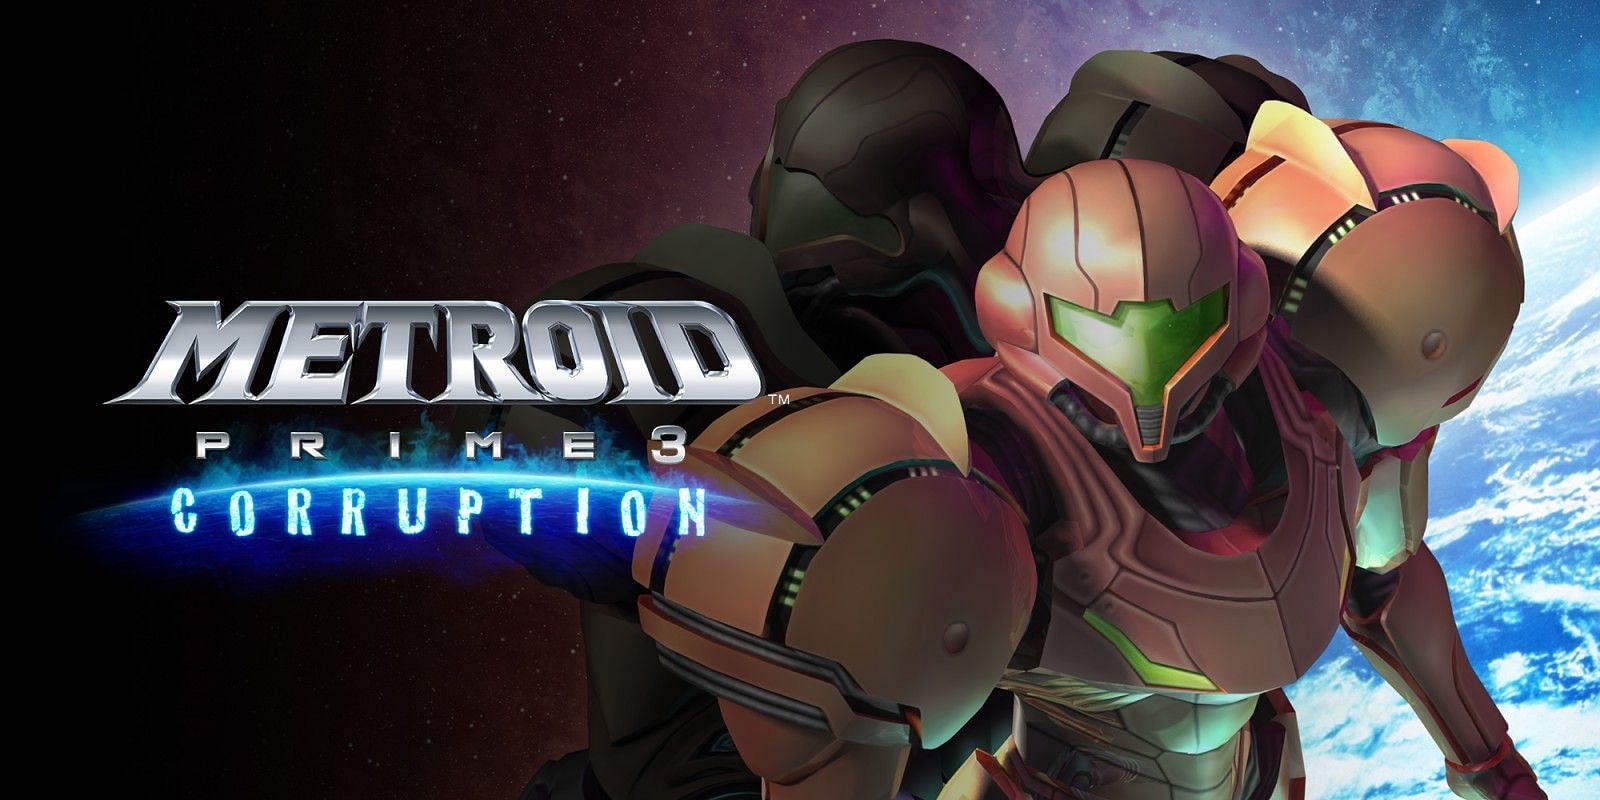 Metroid Prime 3: Corruption (Image via Nintendo)